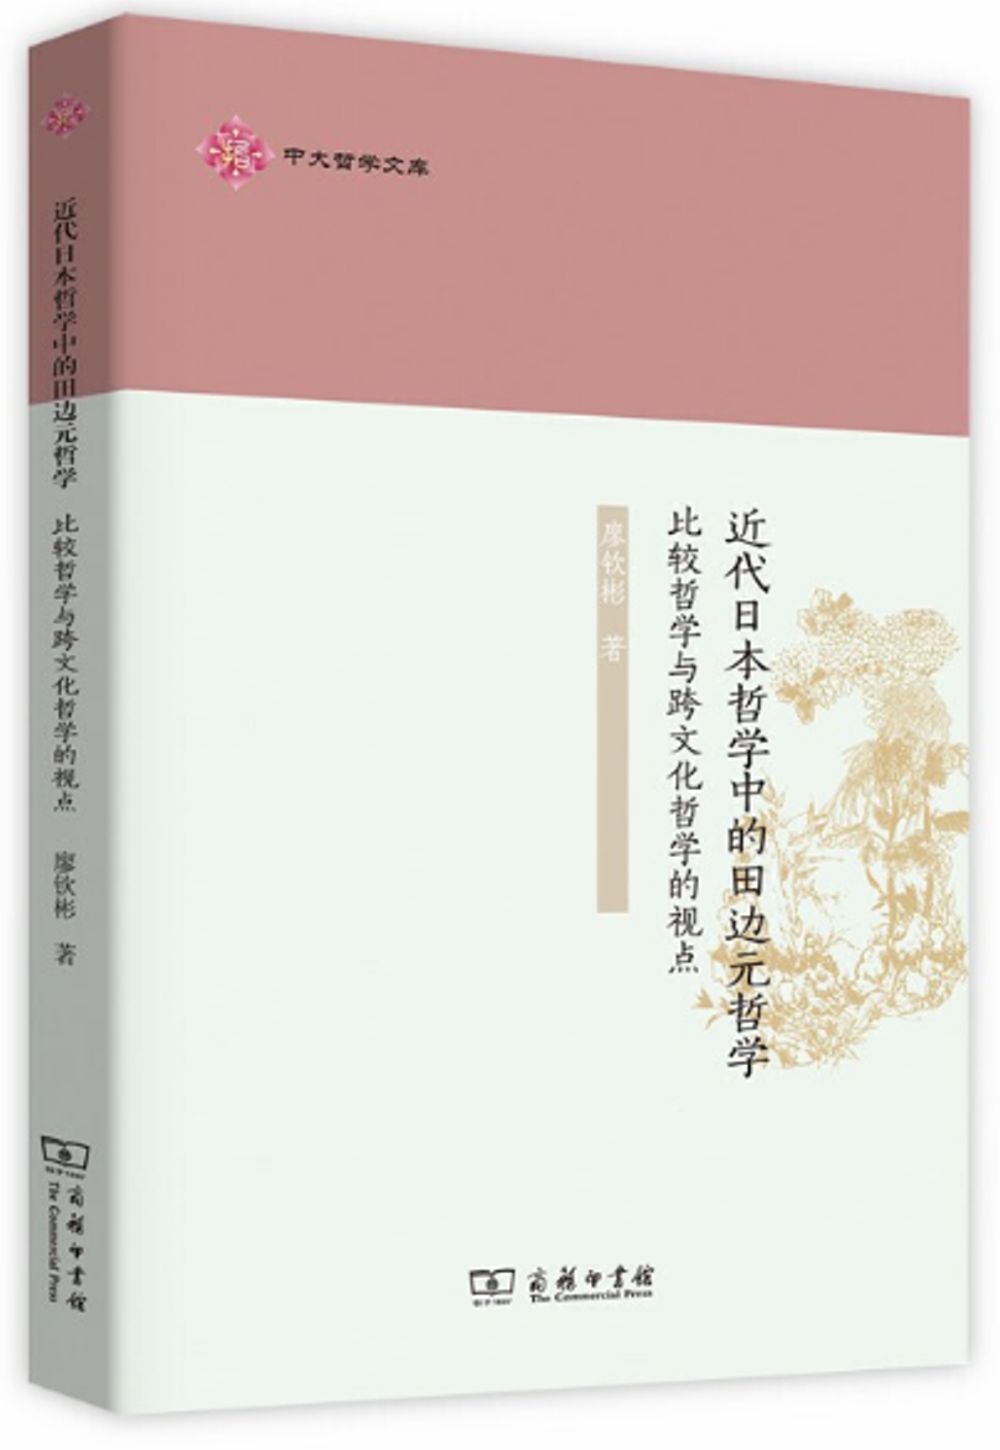 近代日本哲學中的田邊元哲學：比較哲學與跨文化哲學的視點